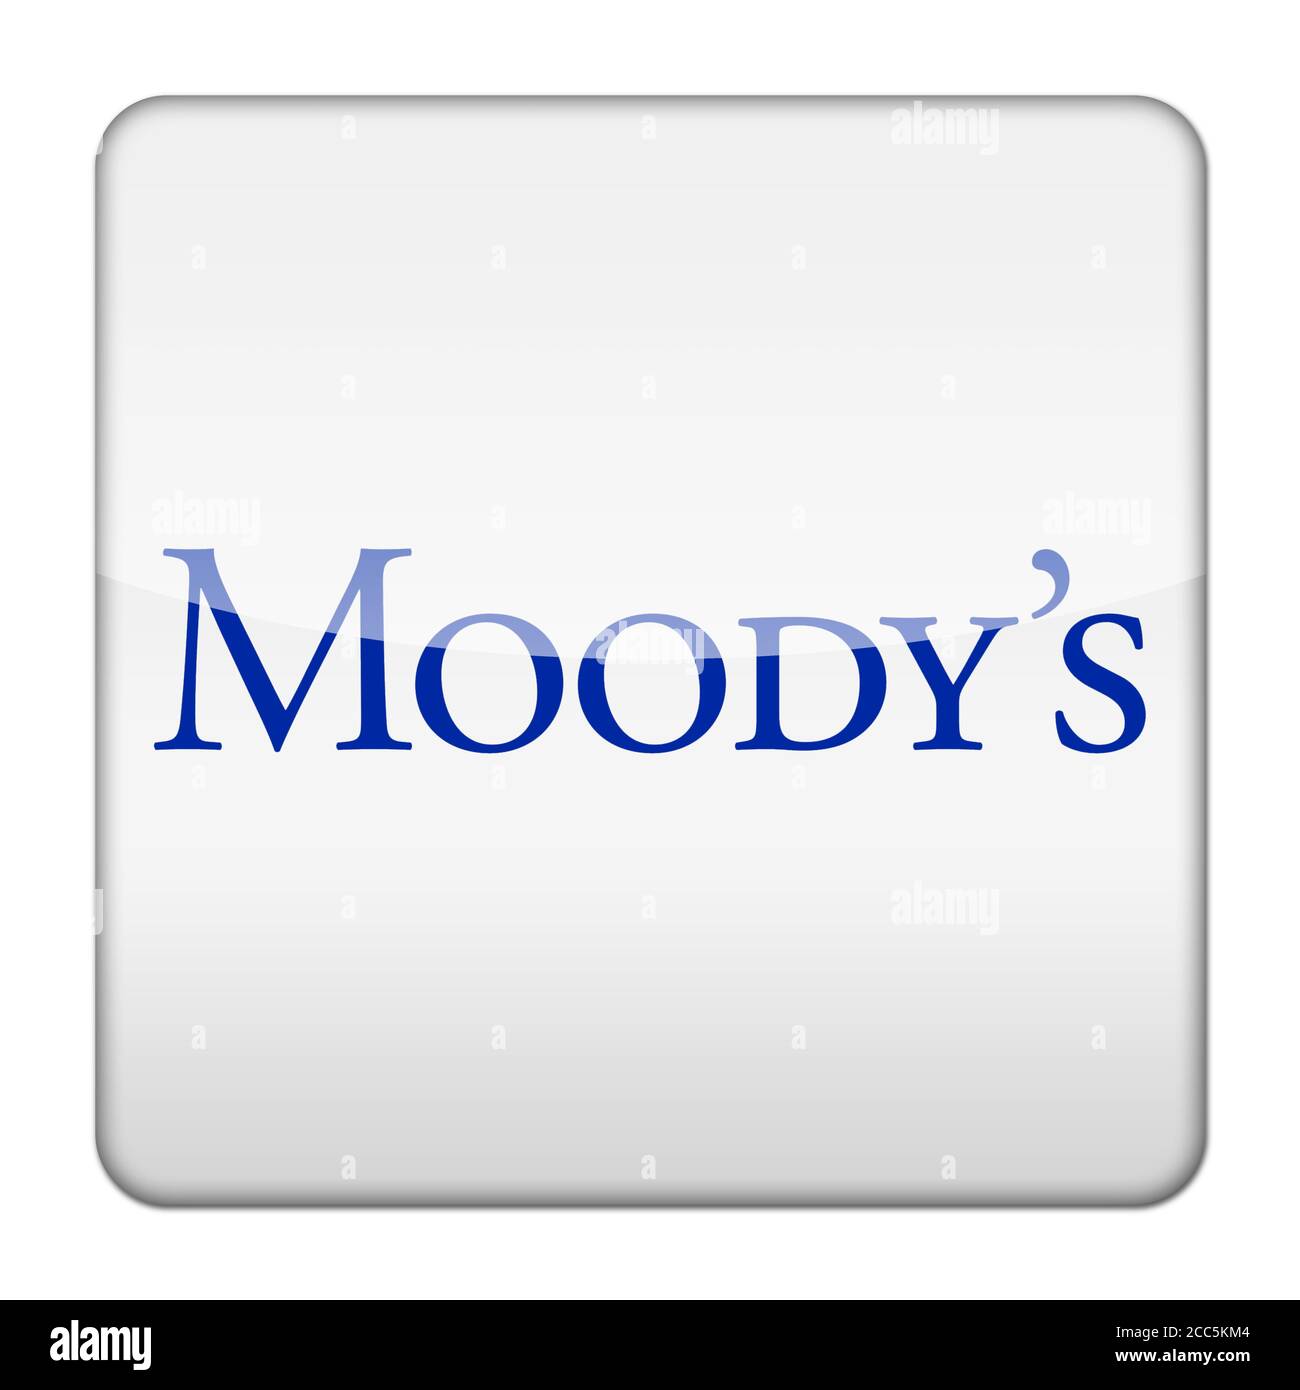 Moody's logo Stock Photo